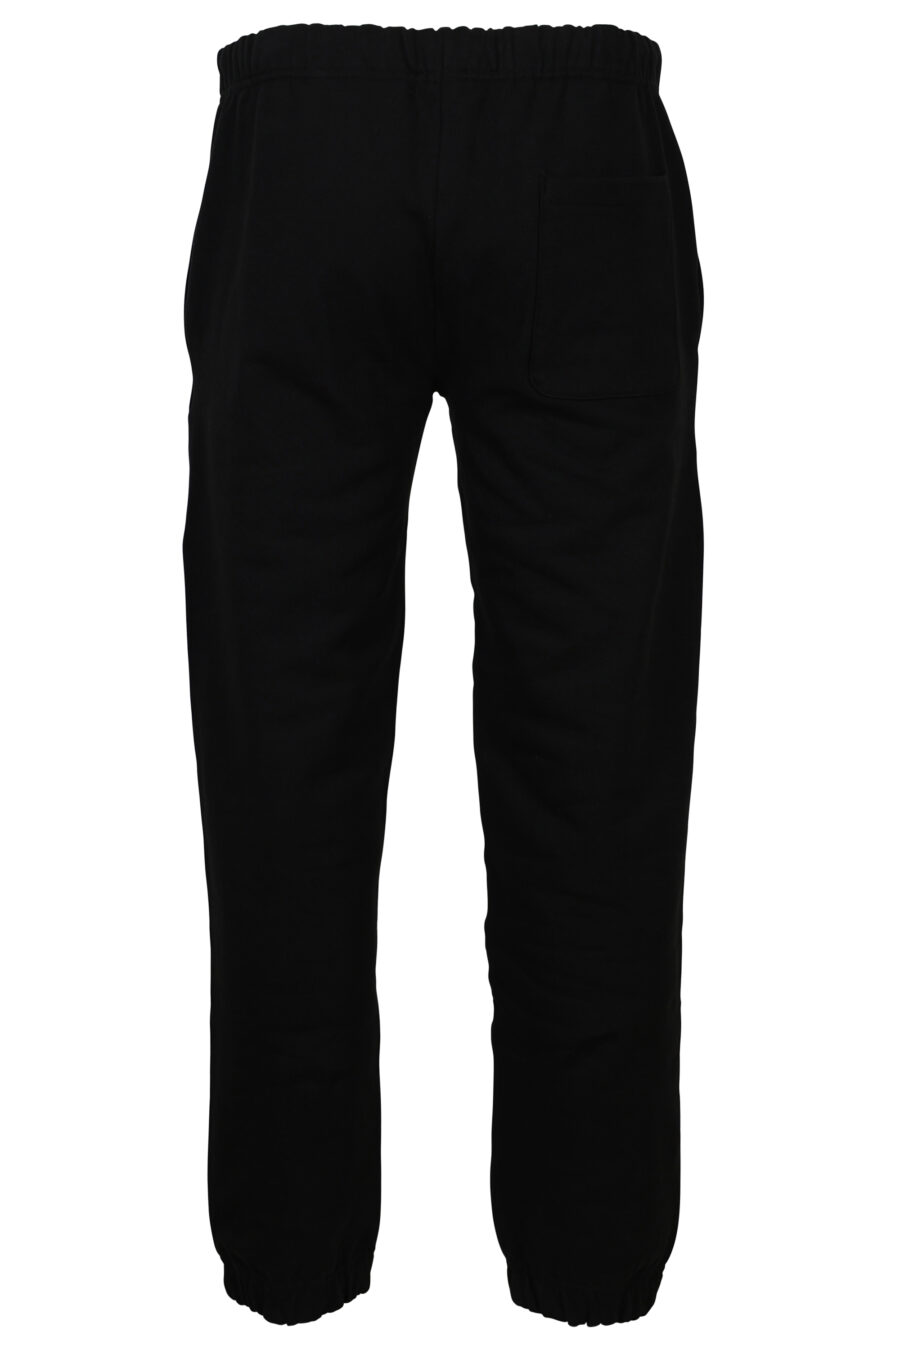 Pantalón de chándal negro con logo pequeño "kenzo paris" - 3612230535985 2